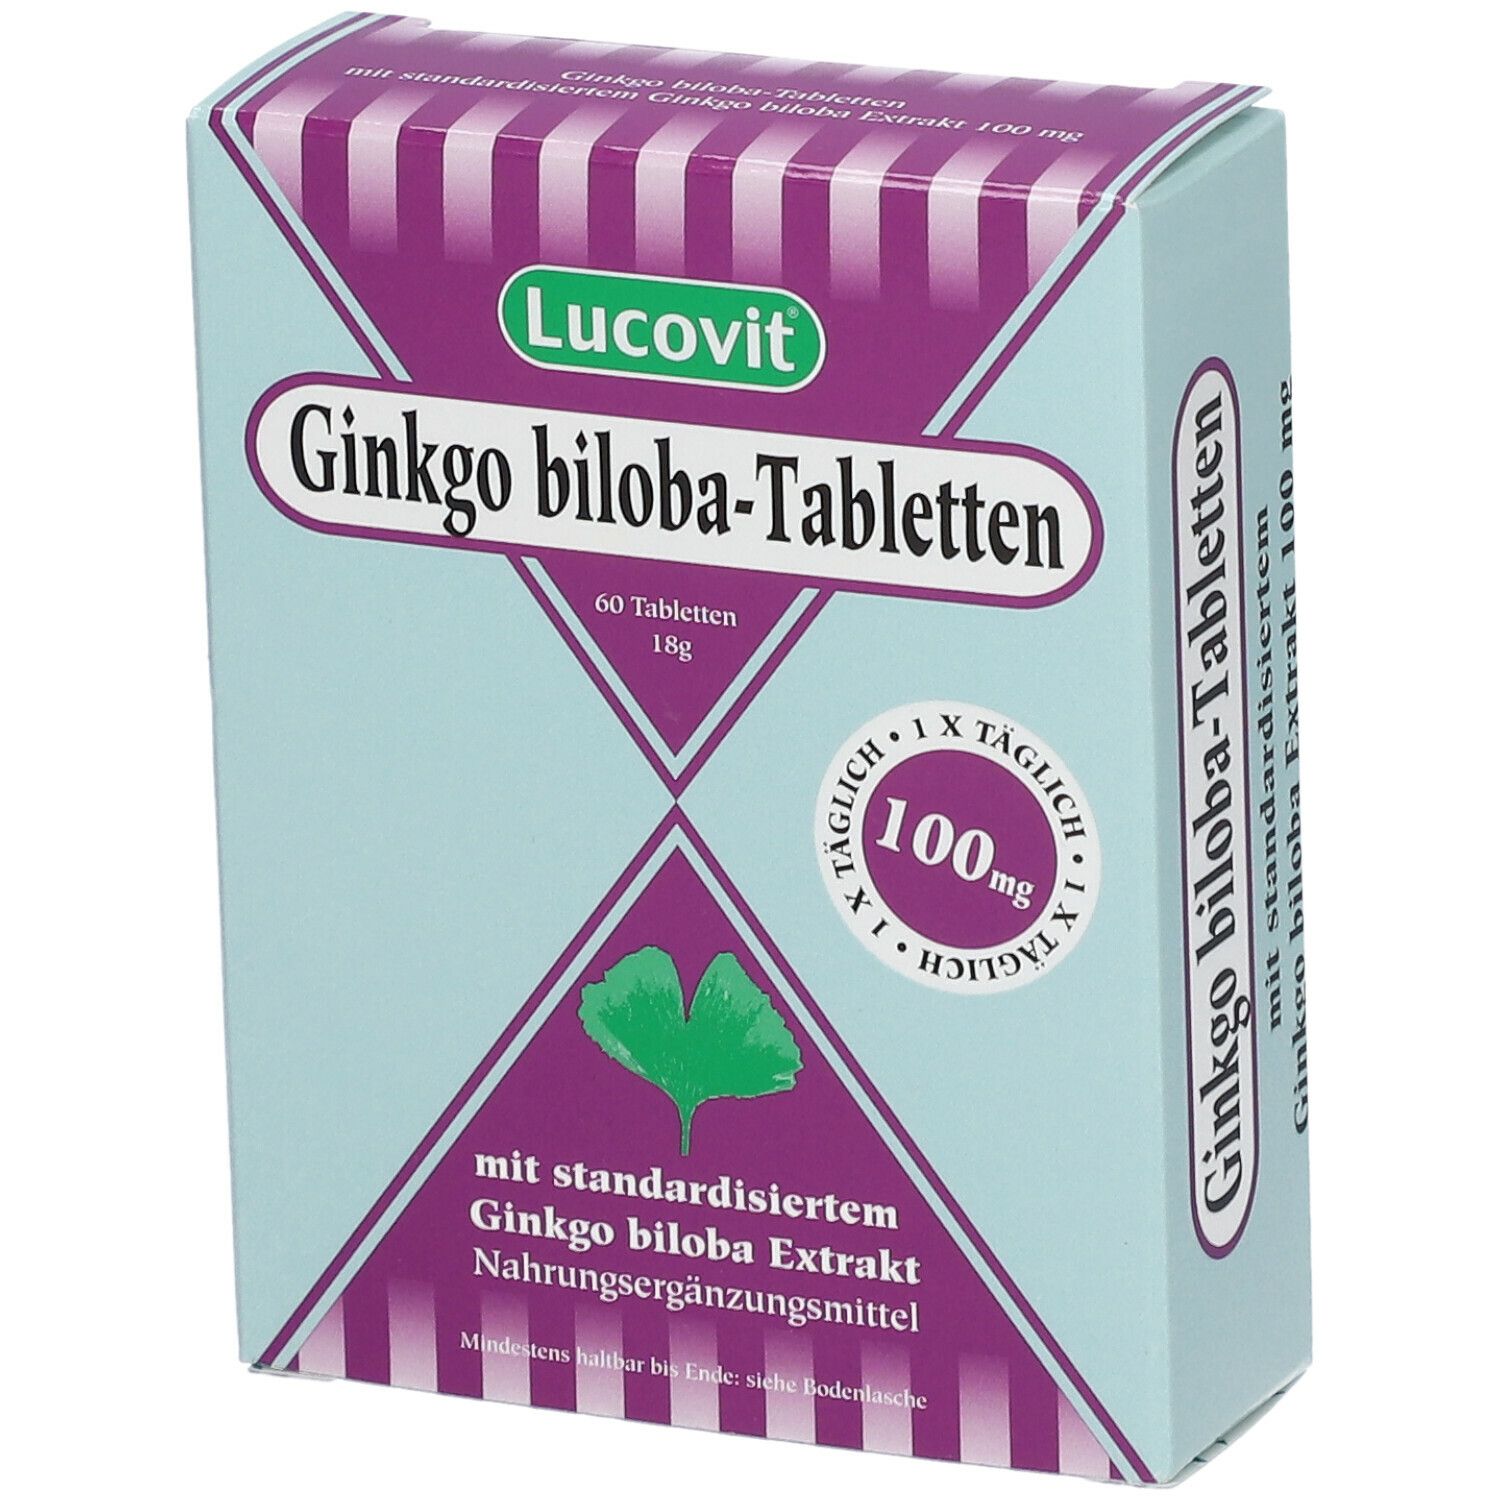 Lucovit Ginkgo biloba-Tabletten 100 mg